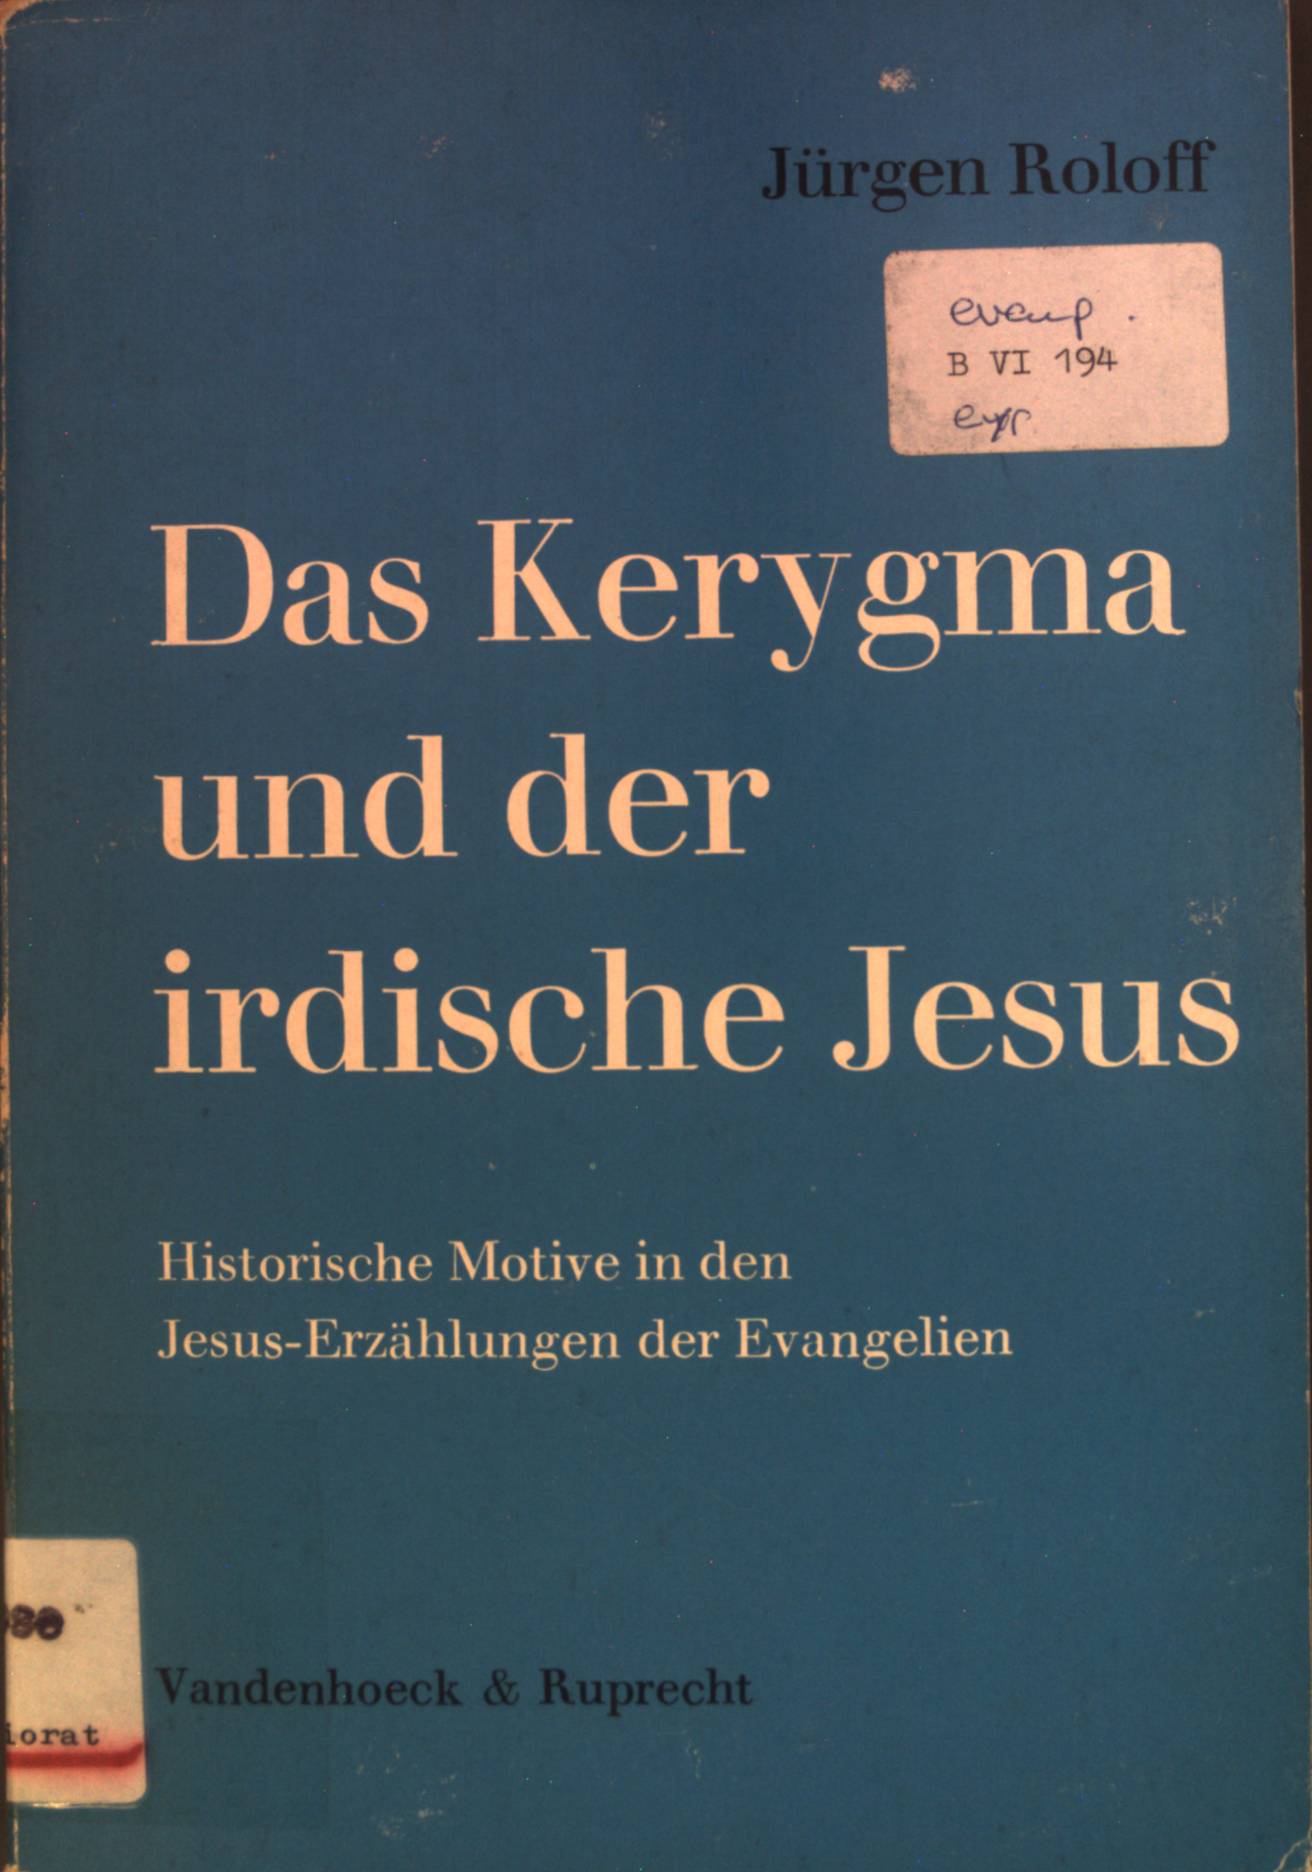 Das Kerygma und der irdische Jesus : historische Motive in den Jesus-Erzählungen der Evangelien. - Roloff, Jürgen